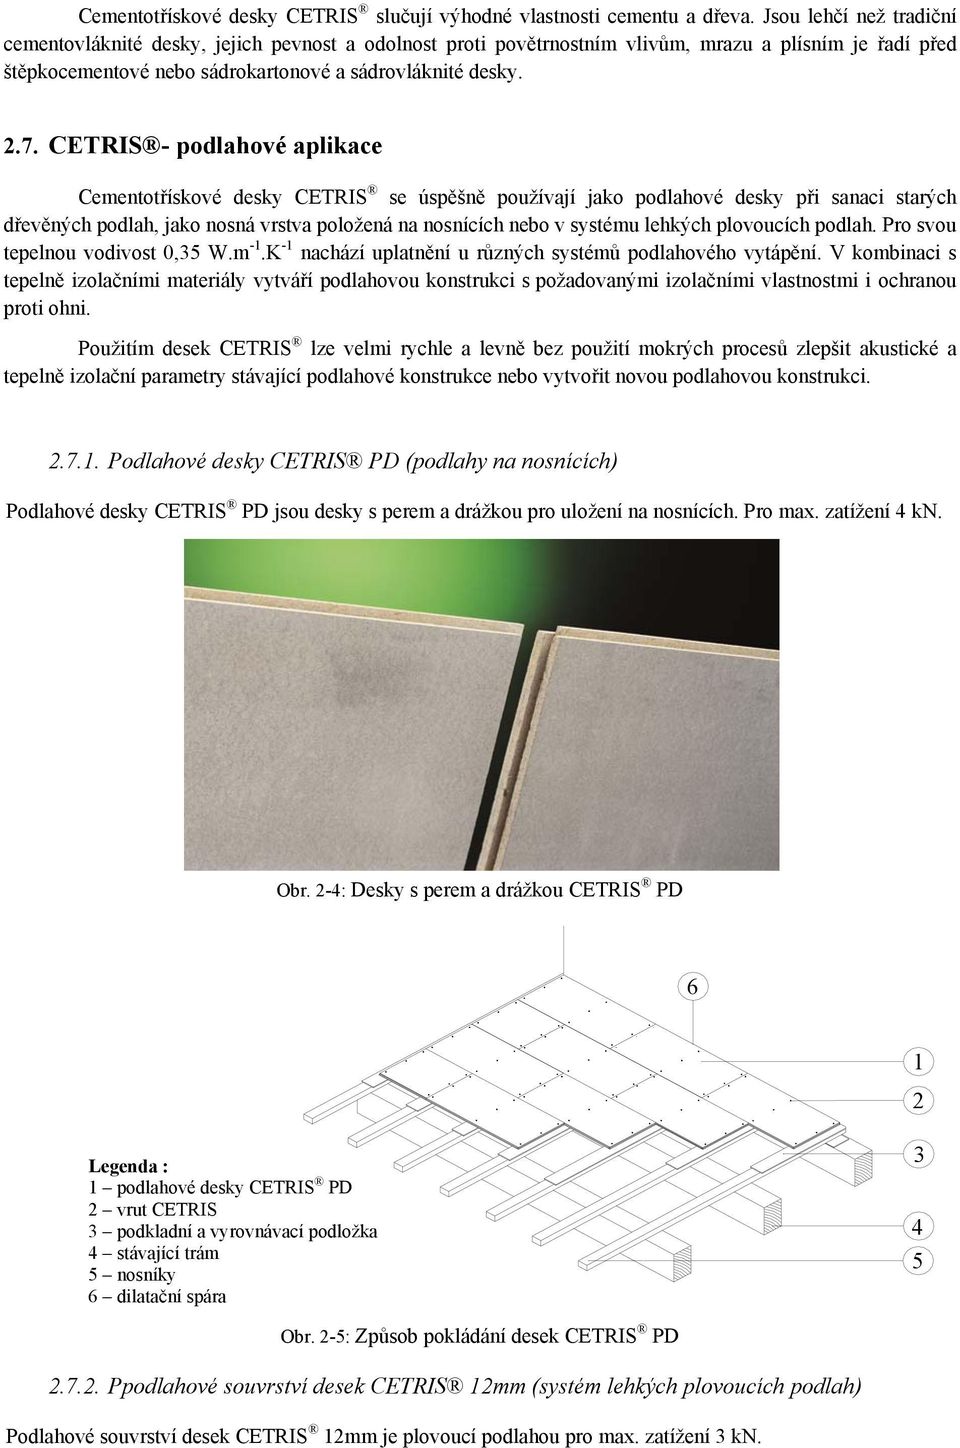 CETRIS - podlahové aplikace Cementotřískové desky CETRIS se úspěšně používají jako podlahové desky při sanaci starých dřevěných podlah, jako nosná vrstva položená na nosnících nebo v systému lehkých